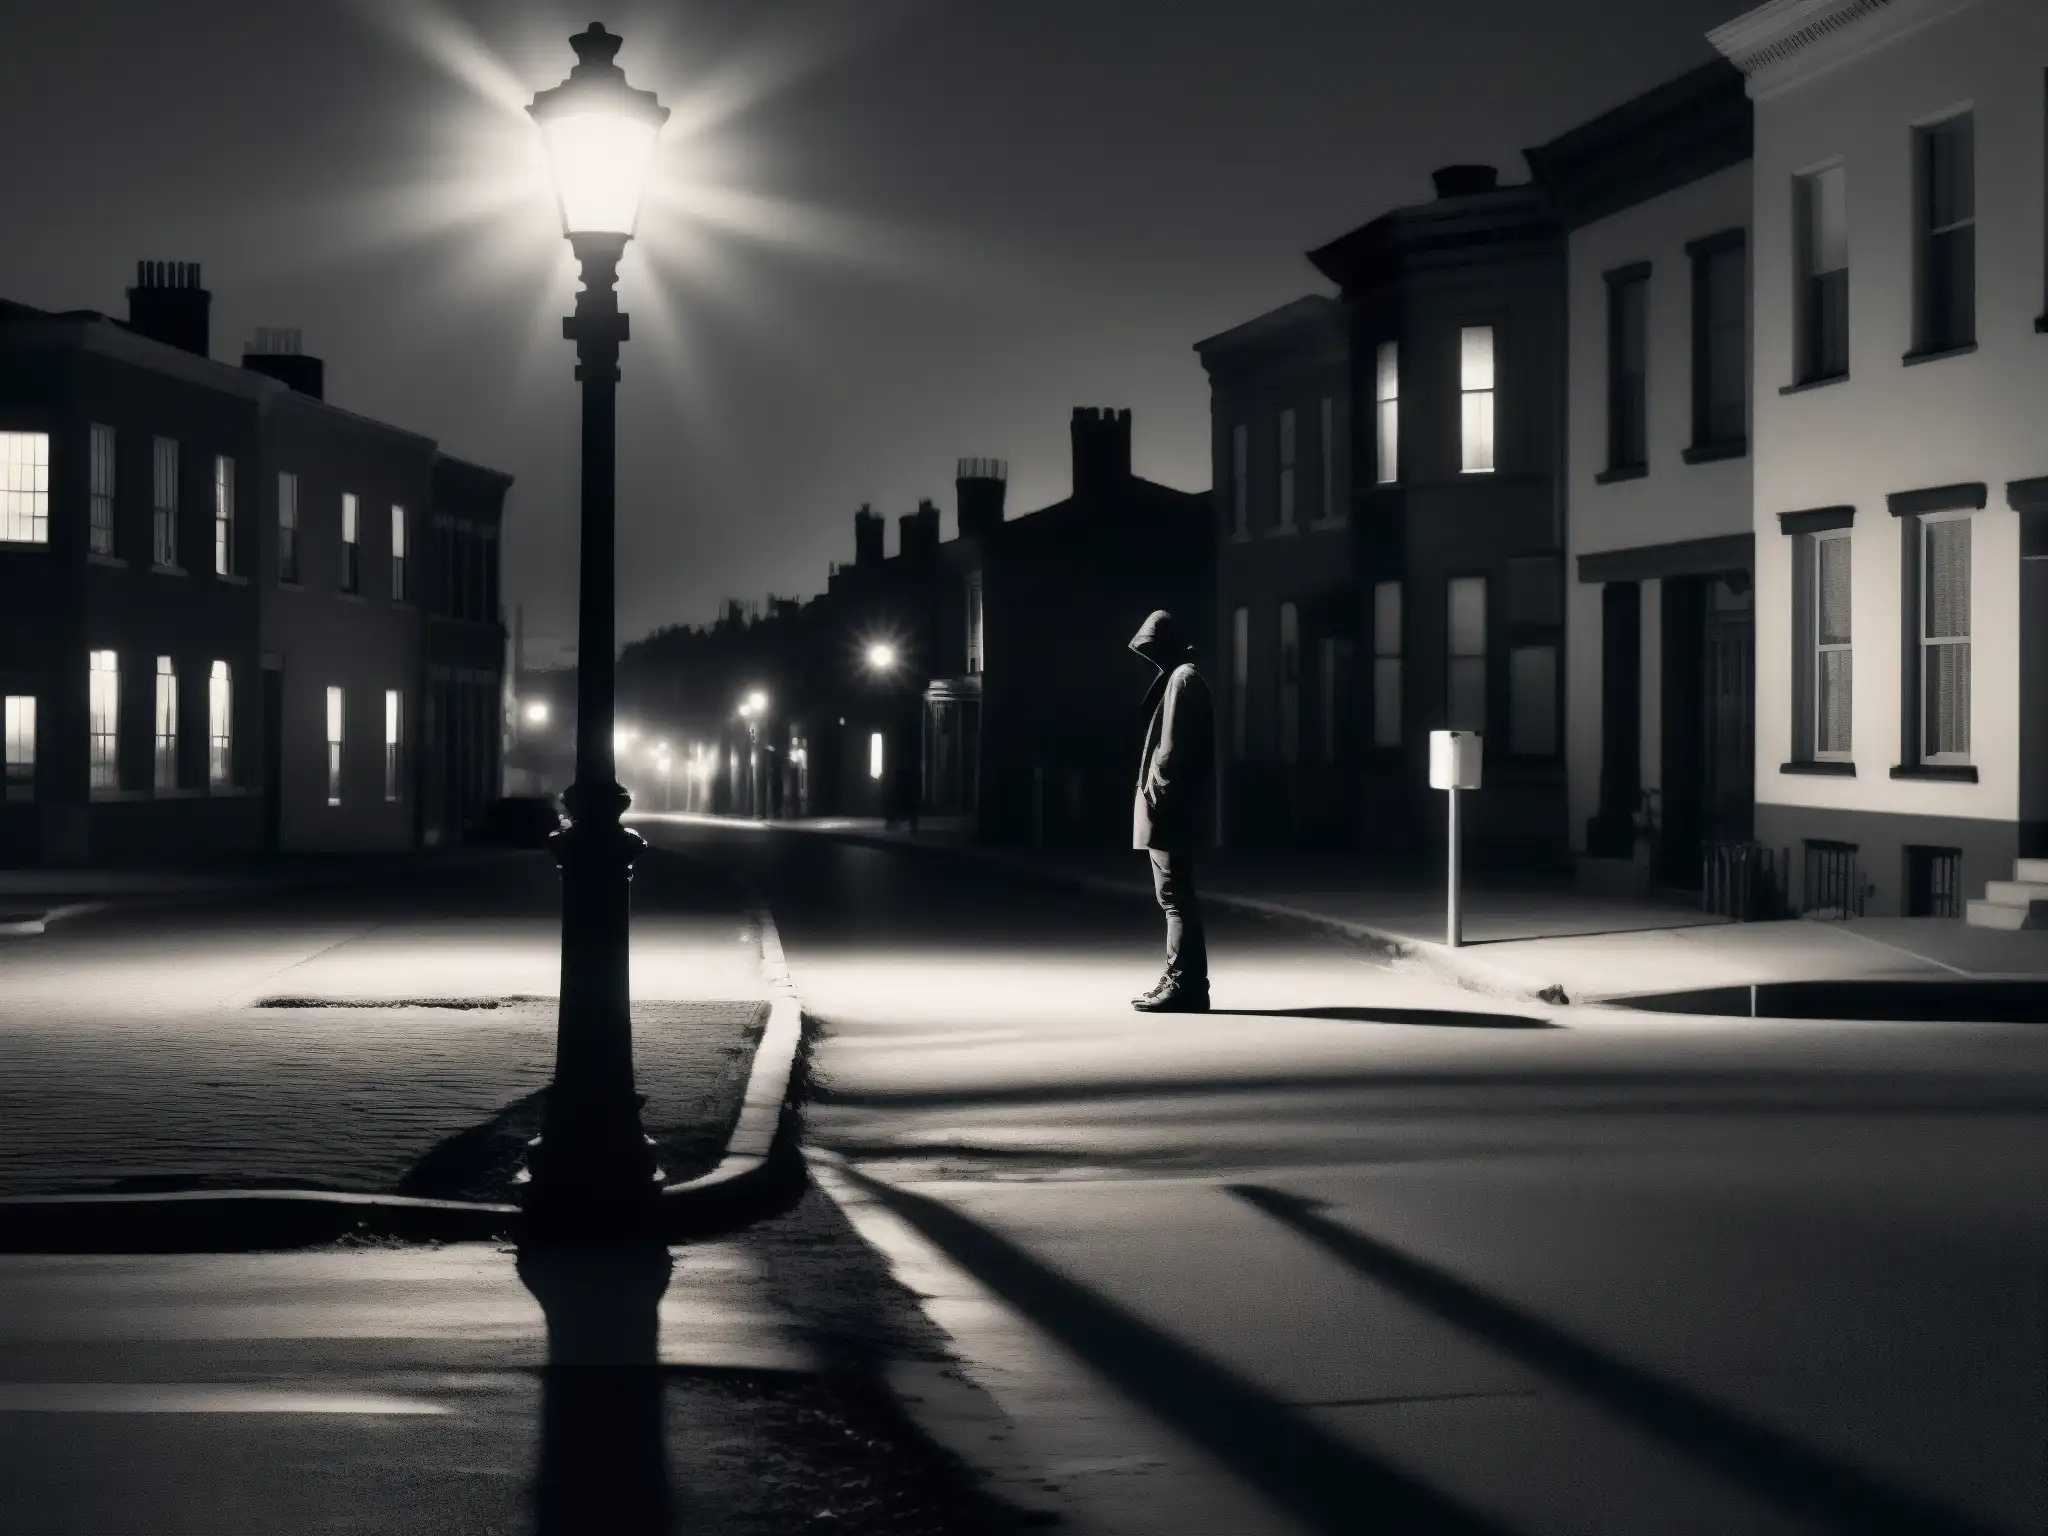 Figura solitaria en la calle desolada de noche, iluminada por la luz de la farola, evocando el impacto de las leyendas urbanas en la salud mental